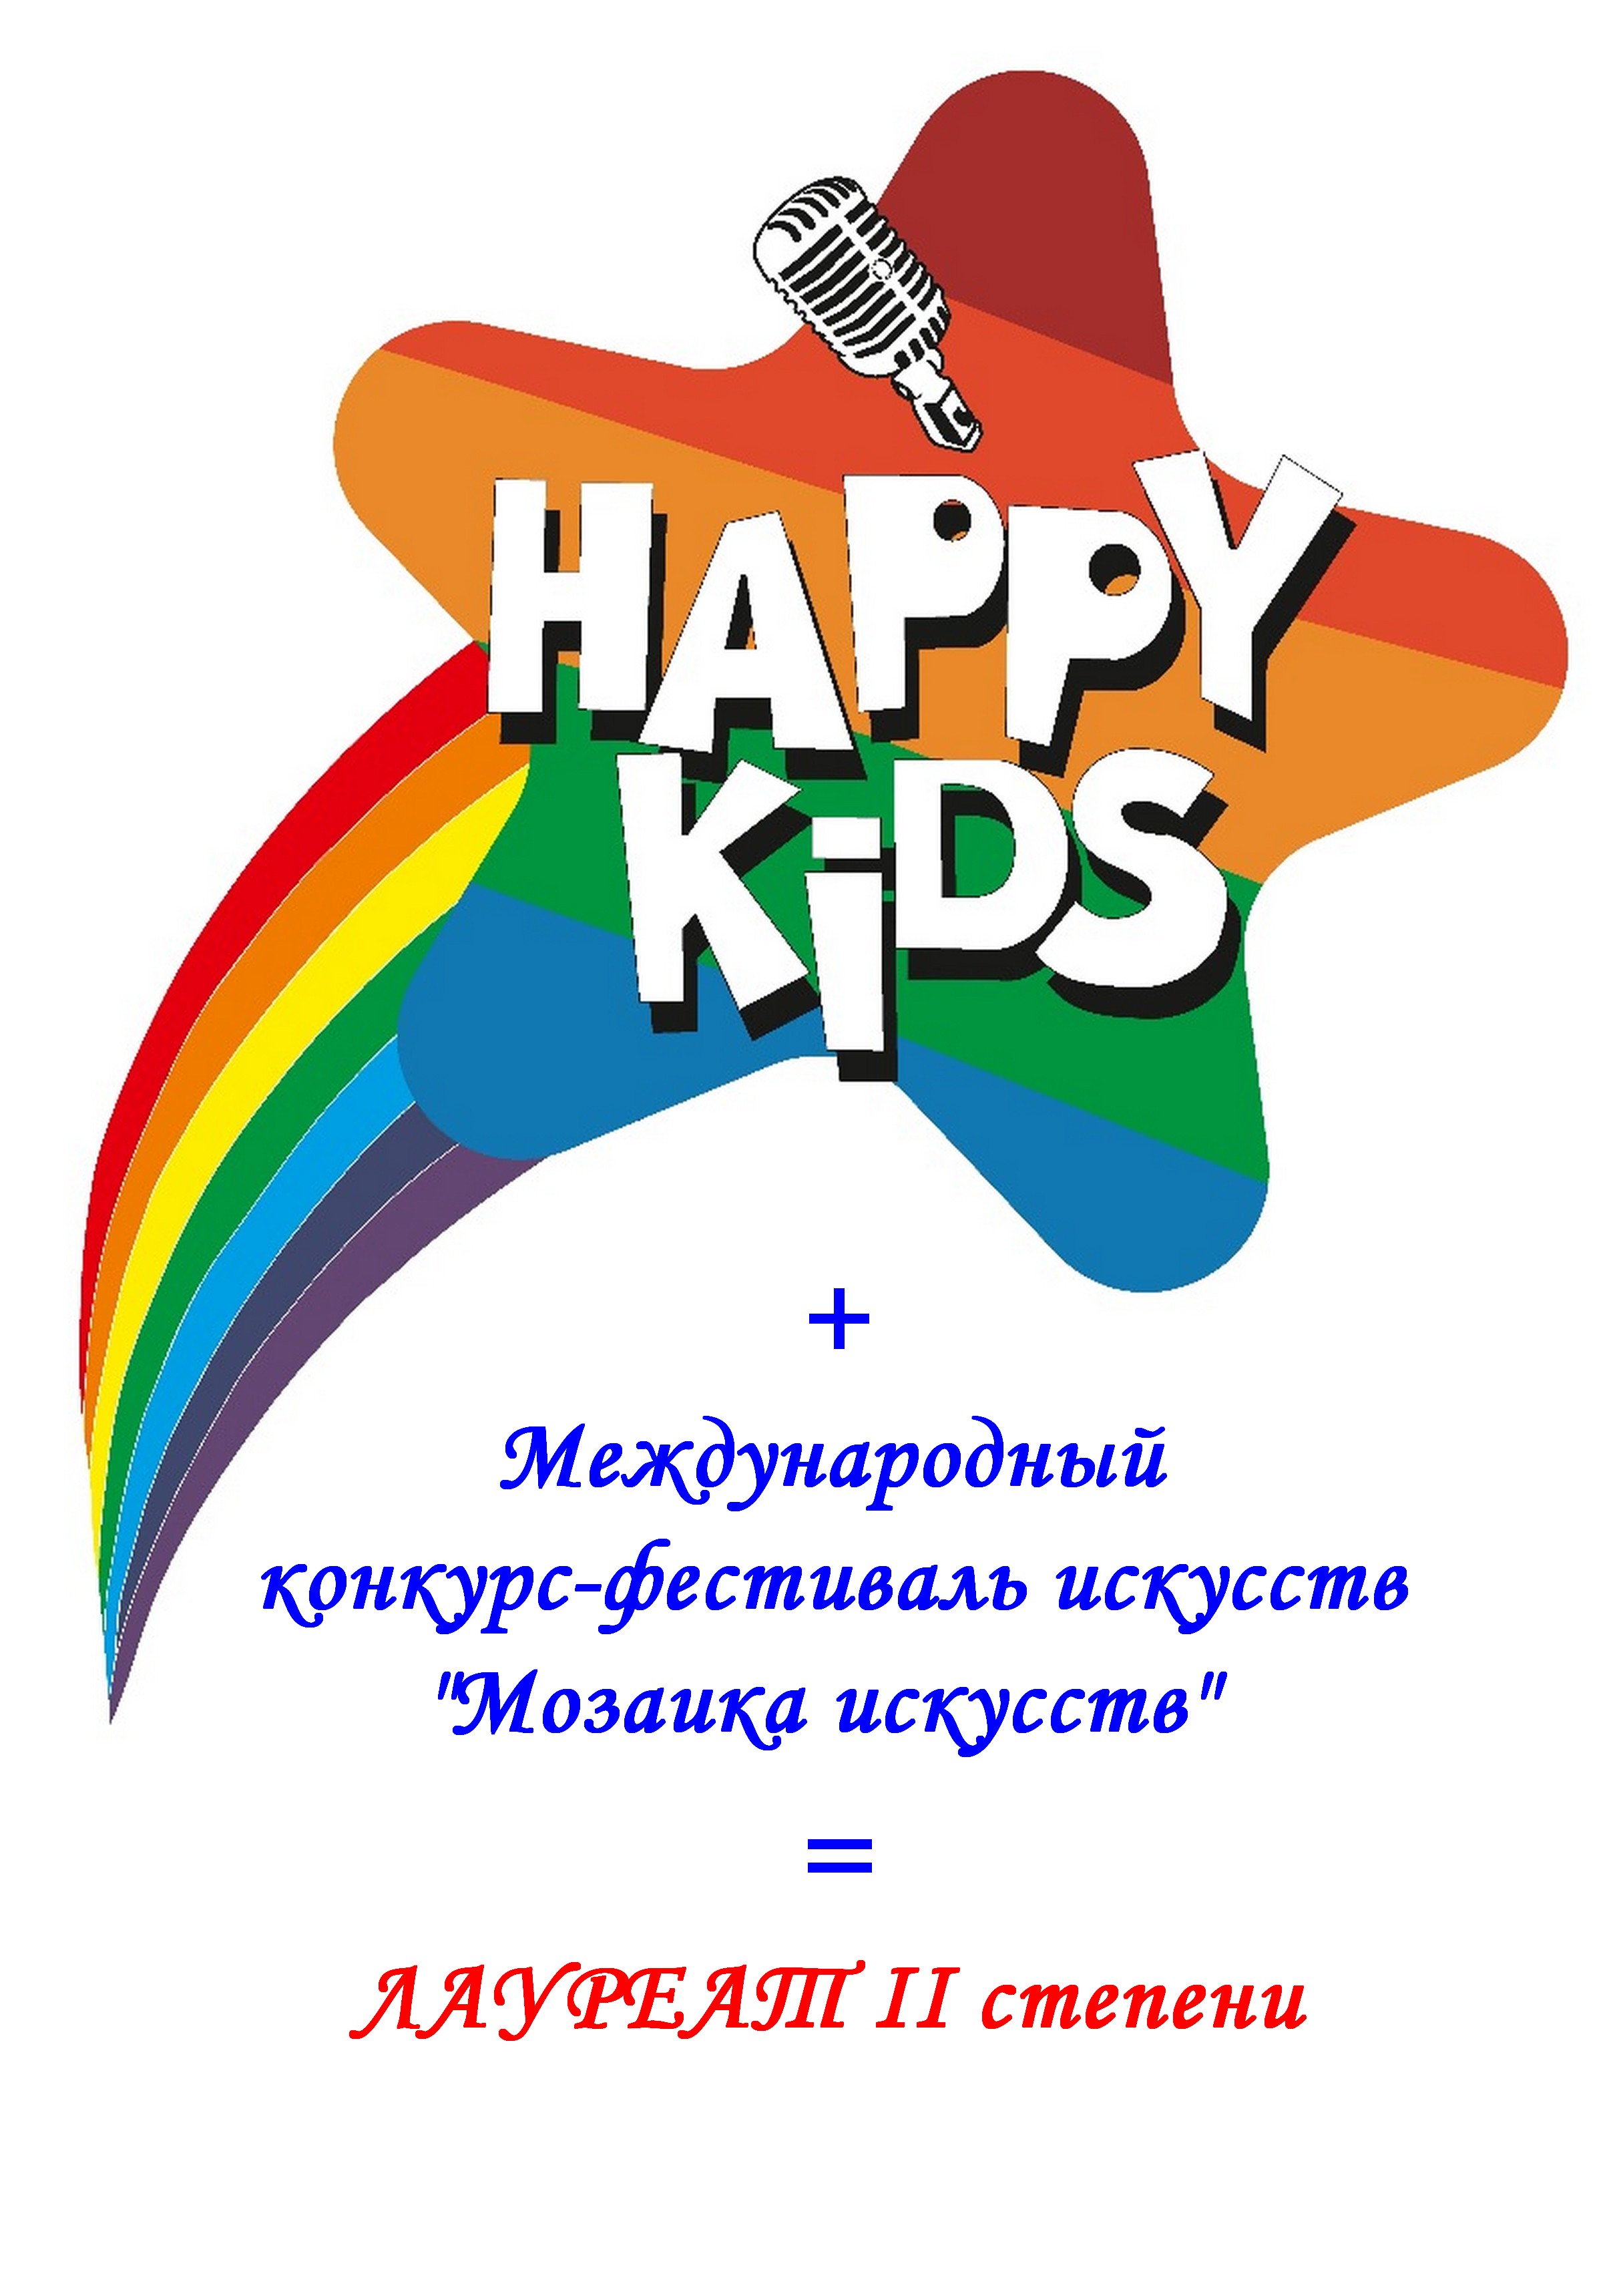 Вокальная студия «Happy KIDS» на Международном конкурсе-фестивале искусств «Мозаика искусств».